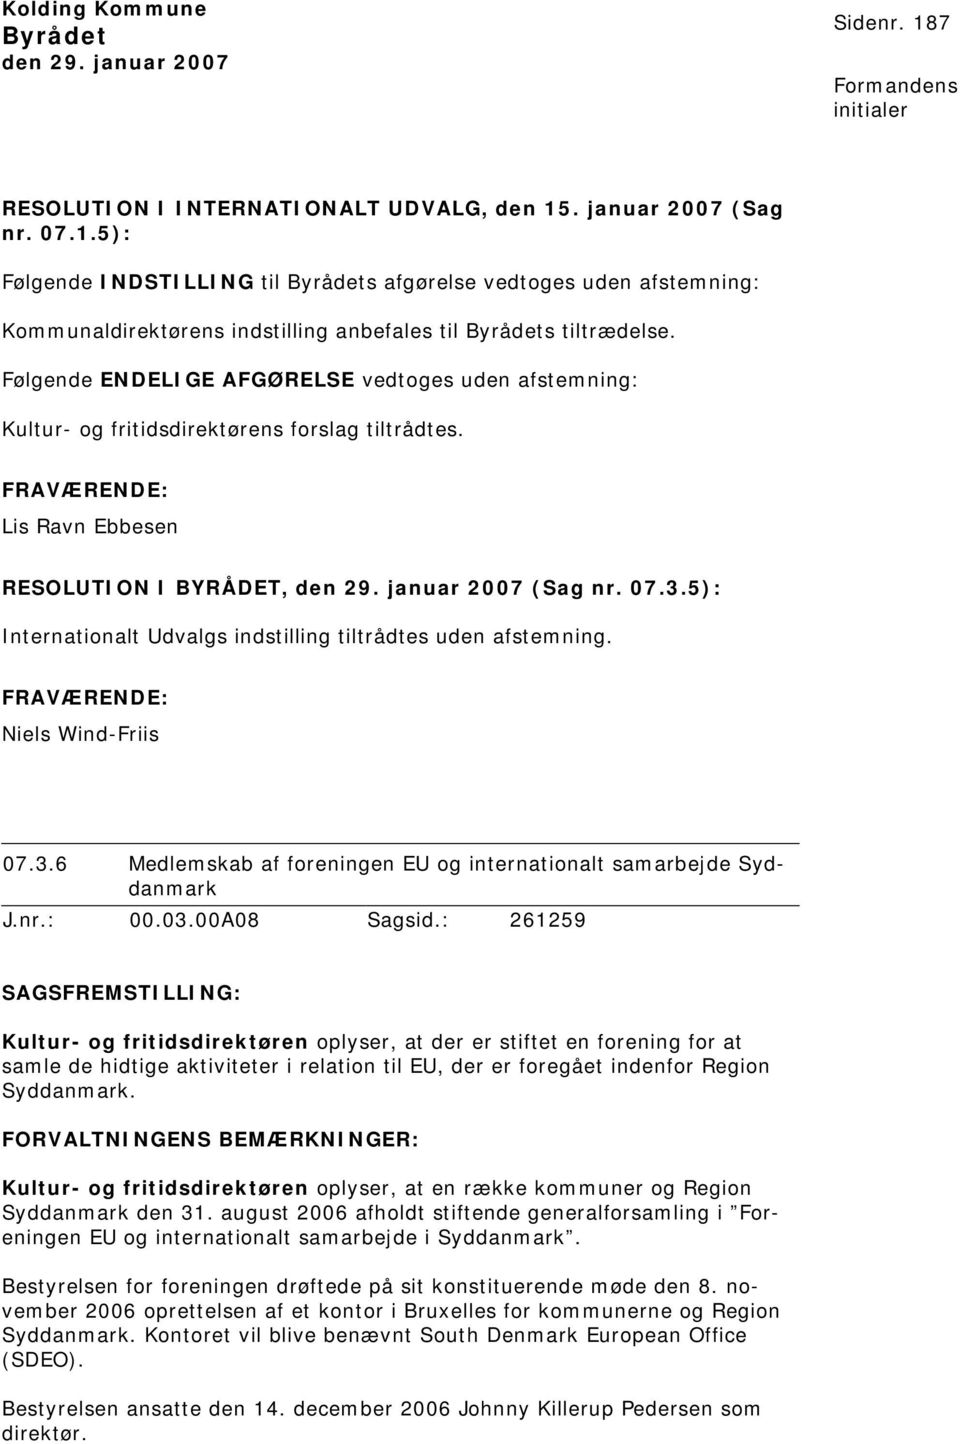 5): Internionalt Udvalgs indstilling tiltrådtes uden afstemning. Niels Wind-Friis 07.3.6 Medlemskab af foreningen EU og internionalt samarbejde Syddanmark J.nr.: 00.03.00A08 Sagsid.